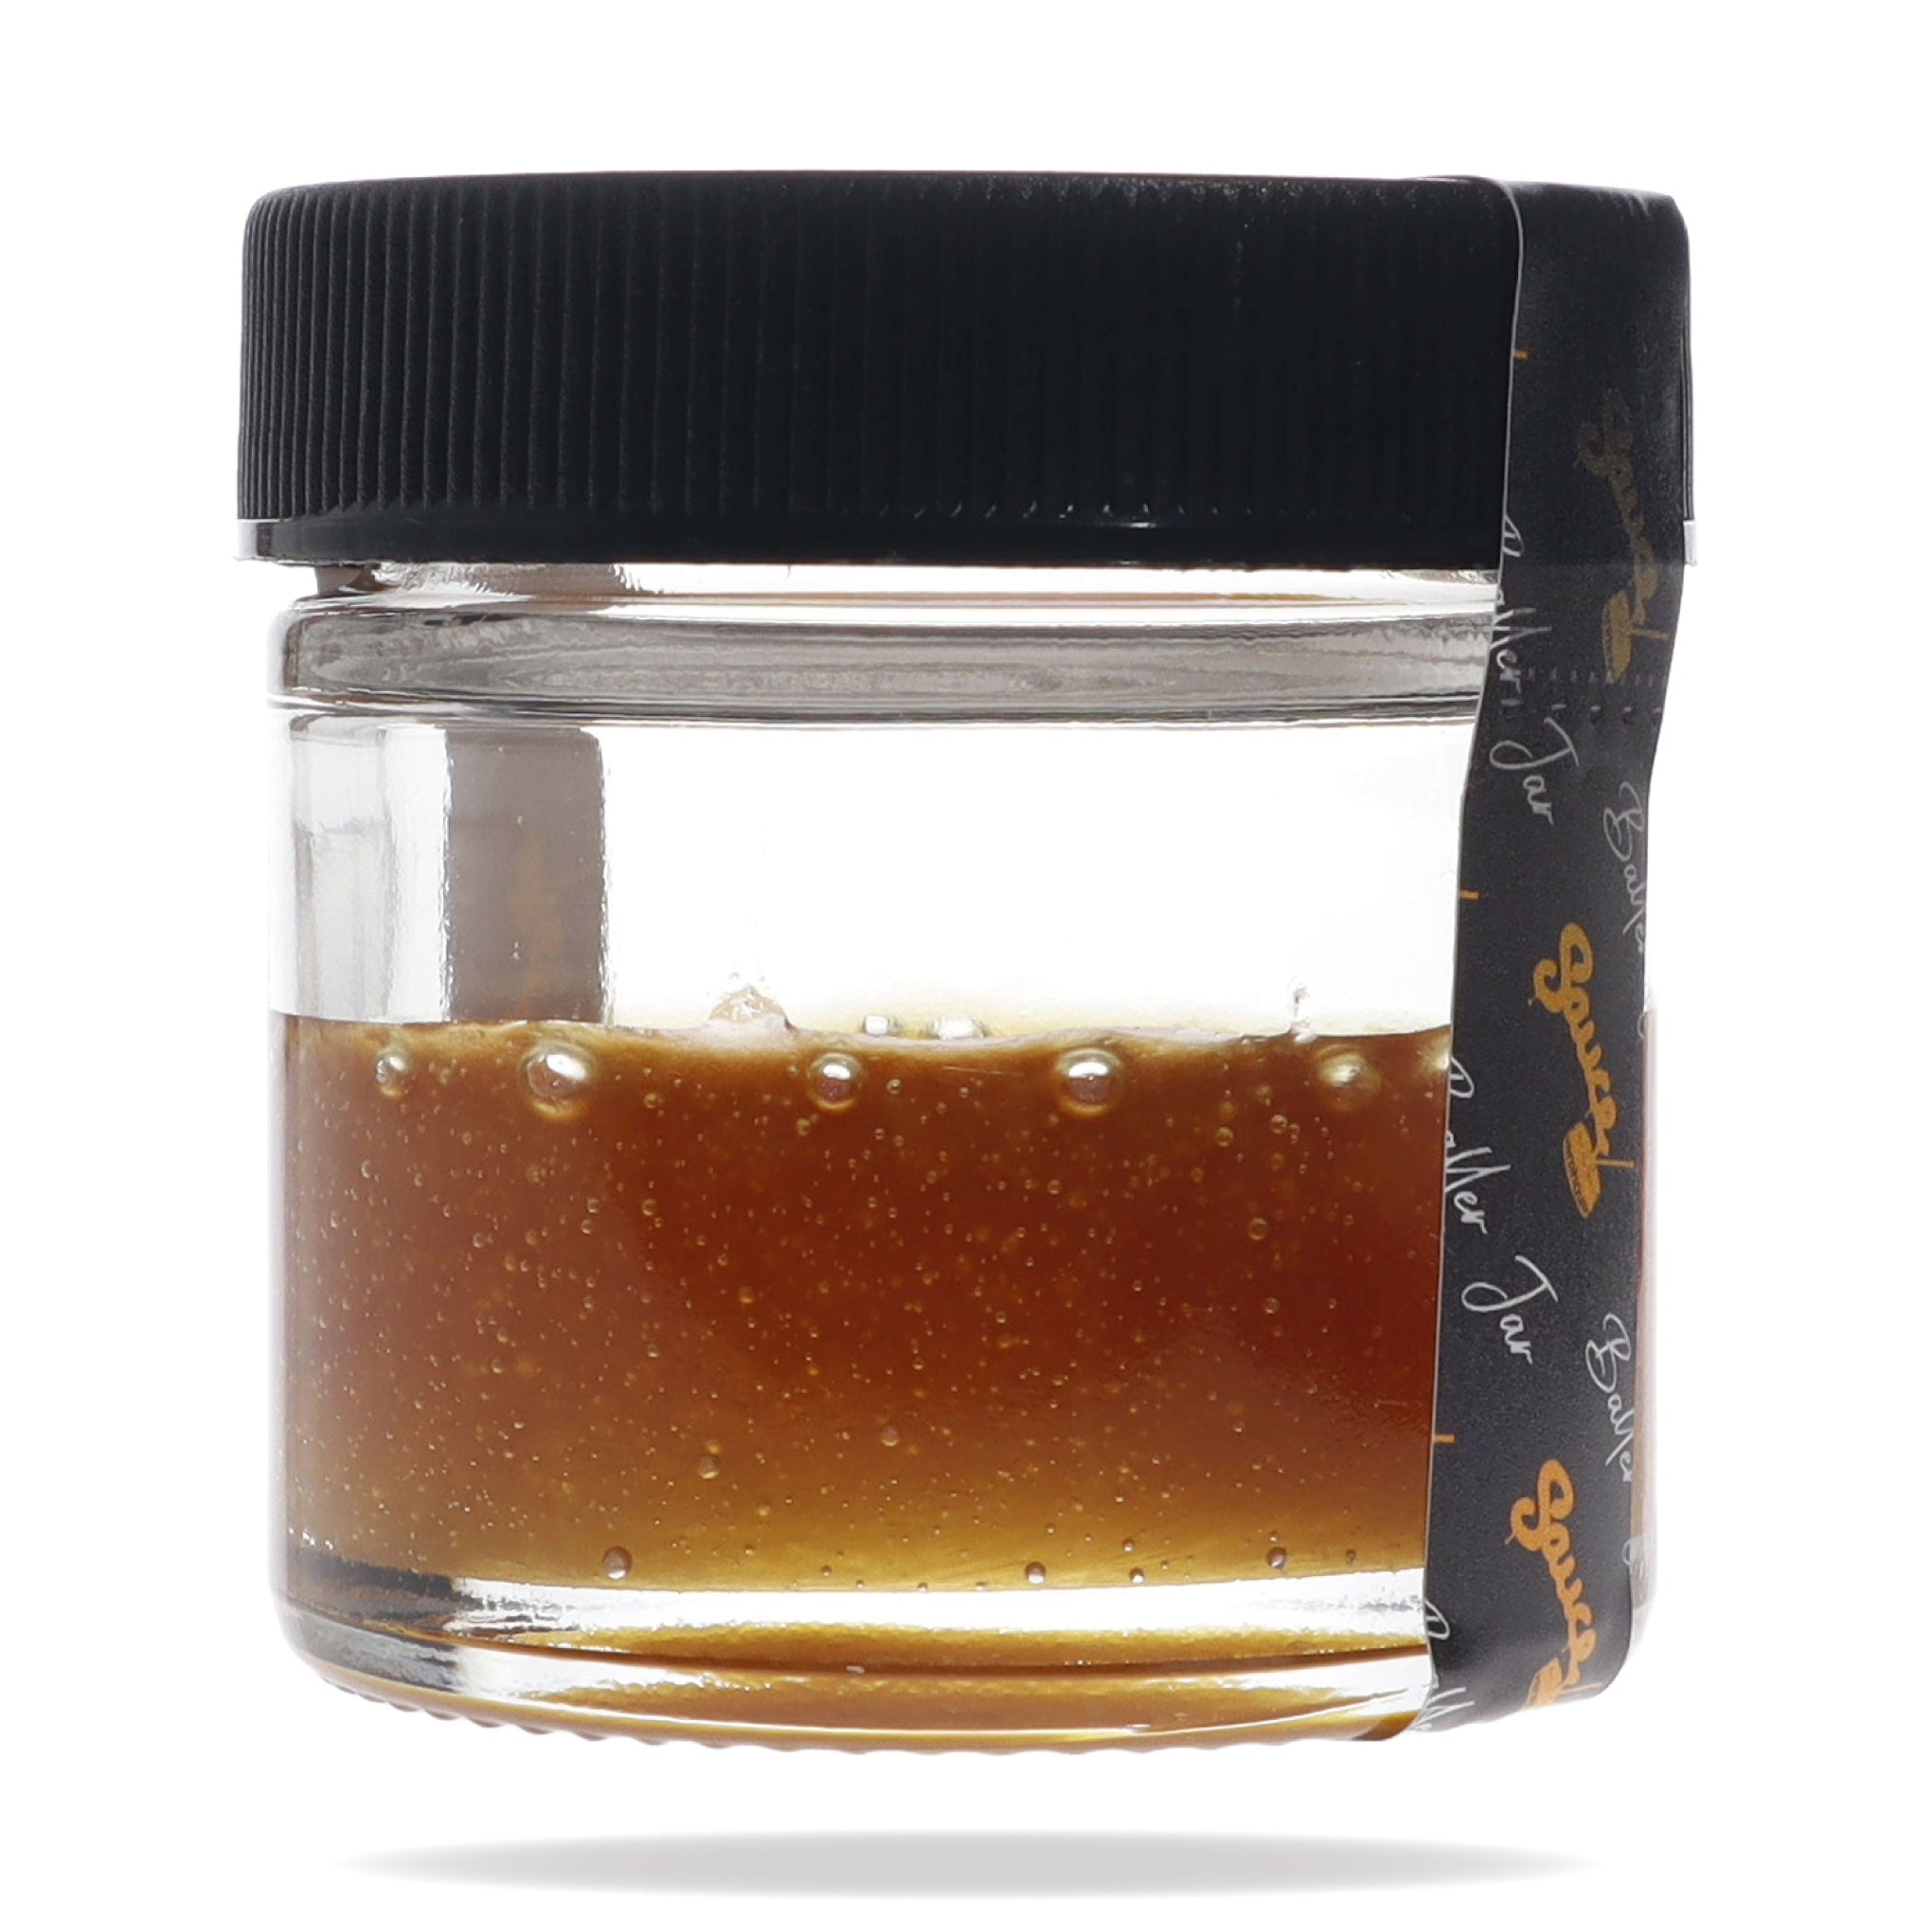 Image of Full Spectrum CBD Distillate 14 gram baller jar.